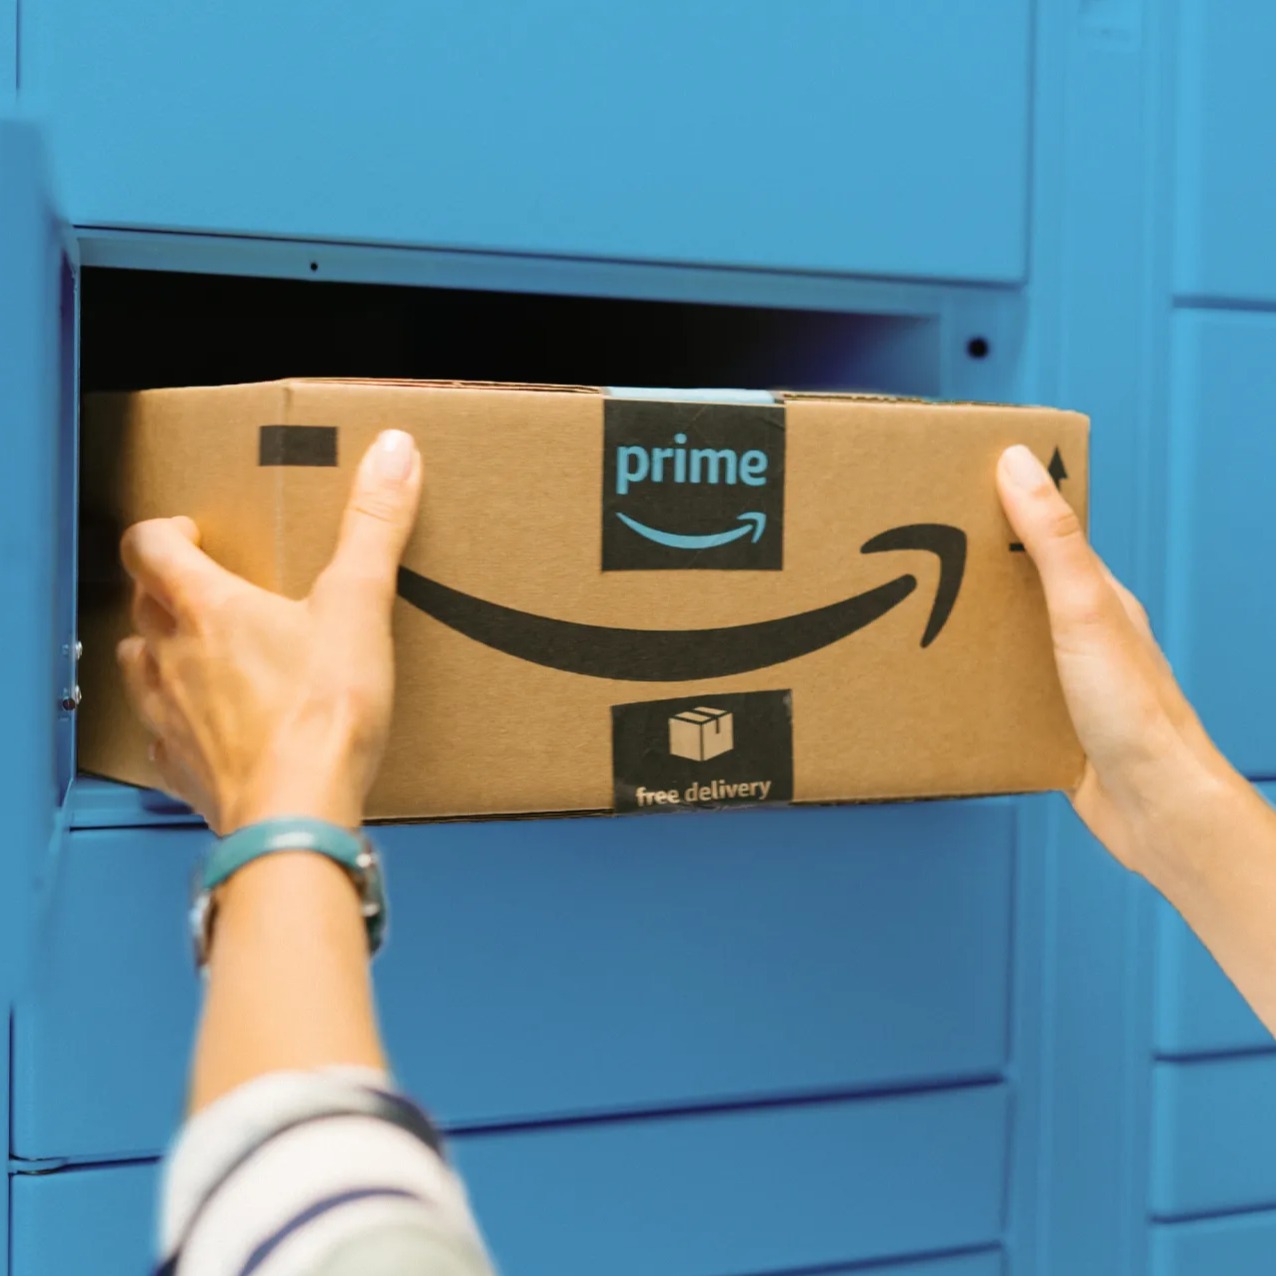 Persona recogiendo una caja en una estación de Amazon